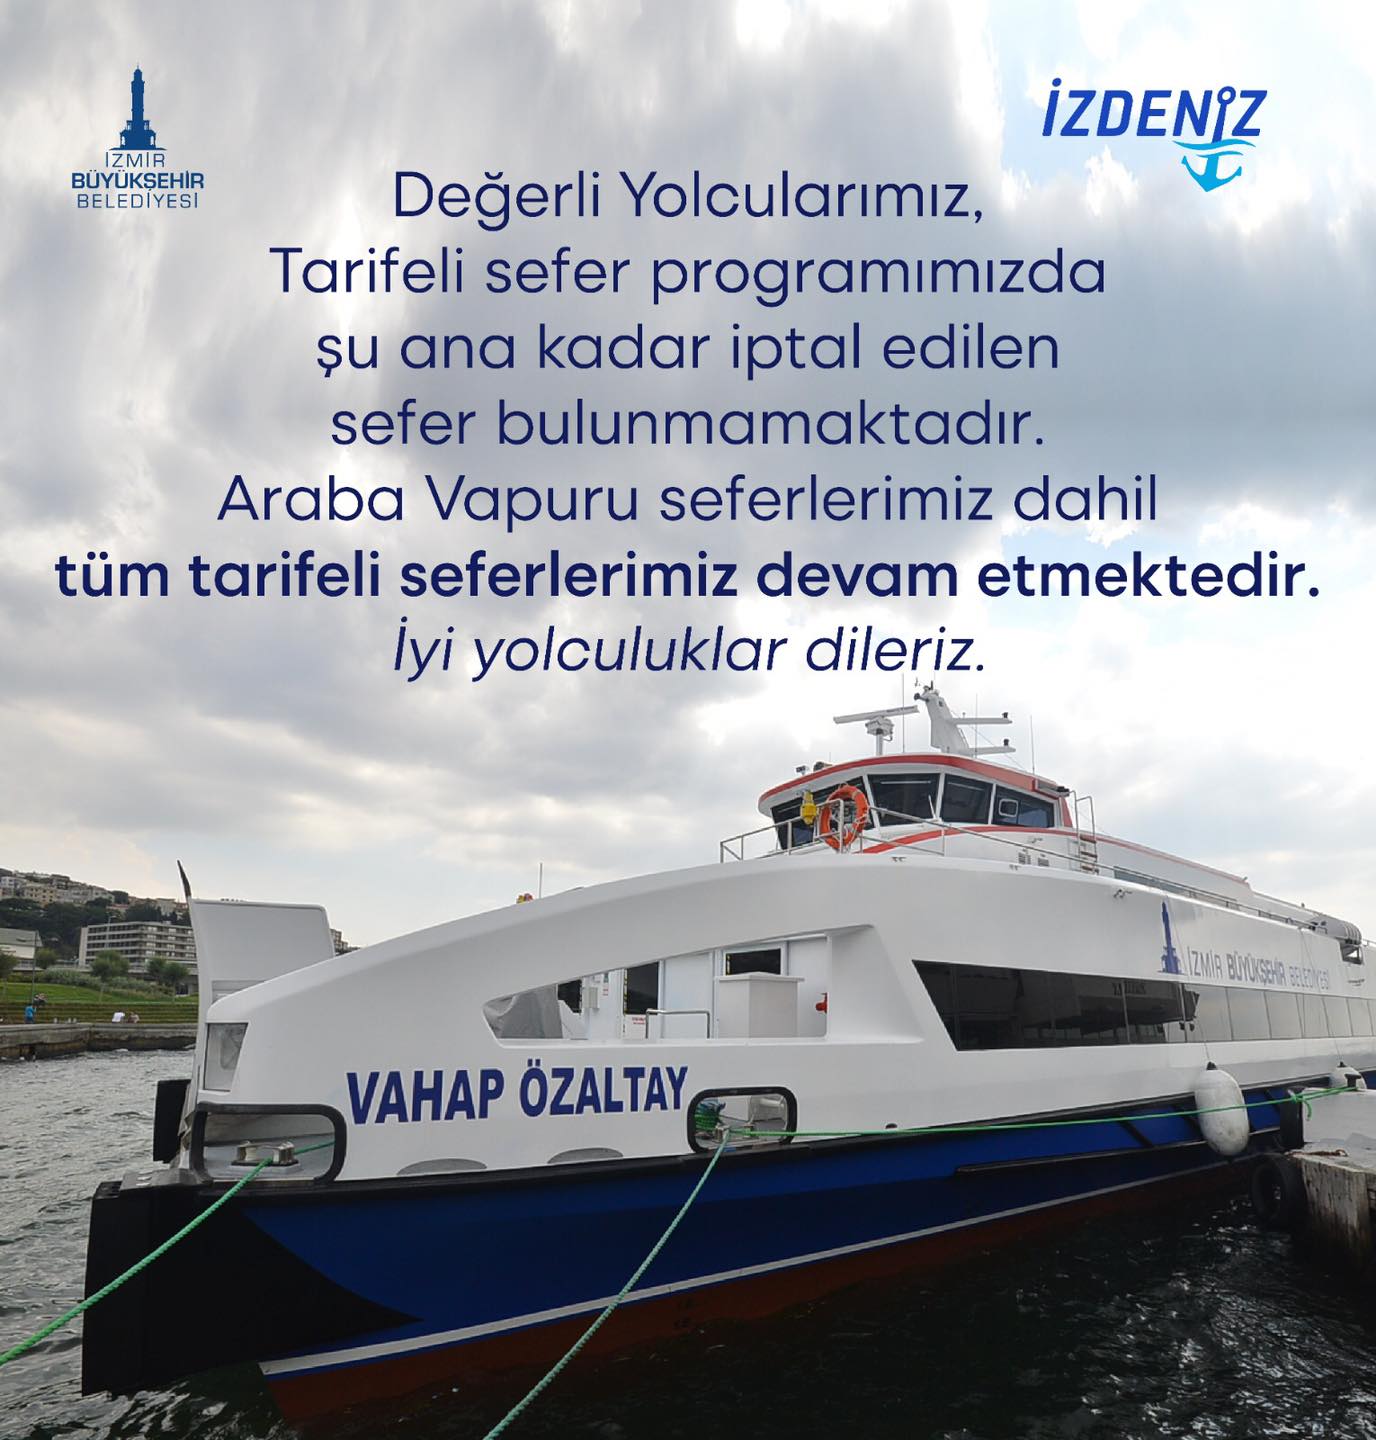 feribot İzmir’de meydana gelen sel felaketinin ardından ulaşımda büyük bir aksama yaşanırken, İzdeniz yaptığı açıklamada deniz ulaşımında seferlerin devam ettiği belirtildi.